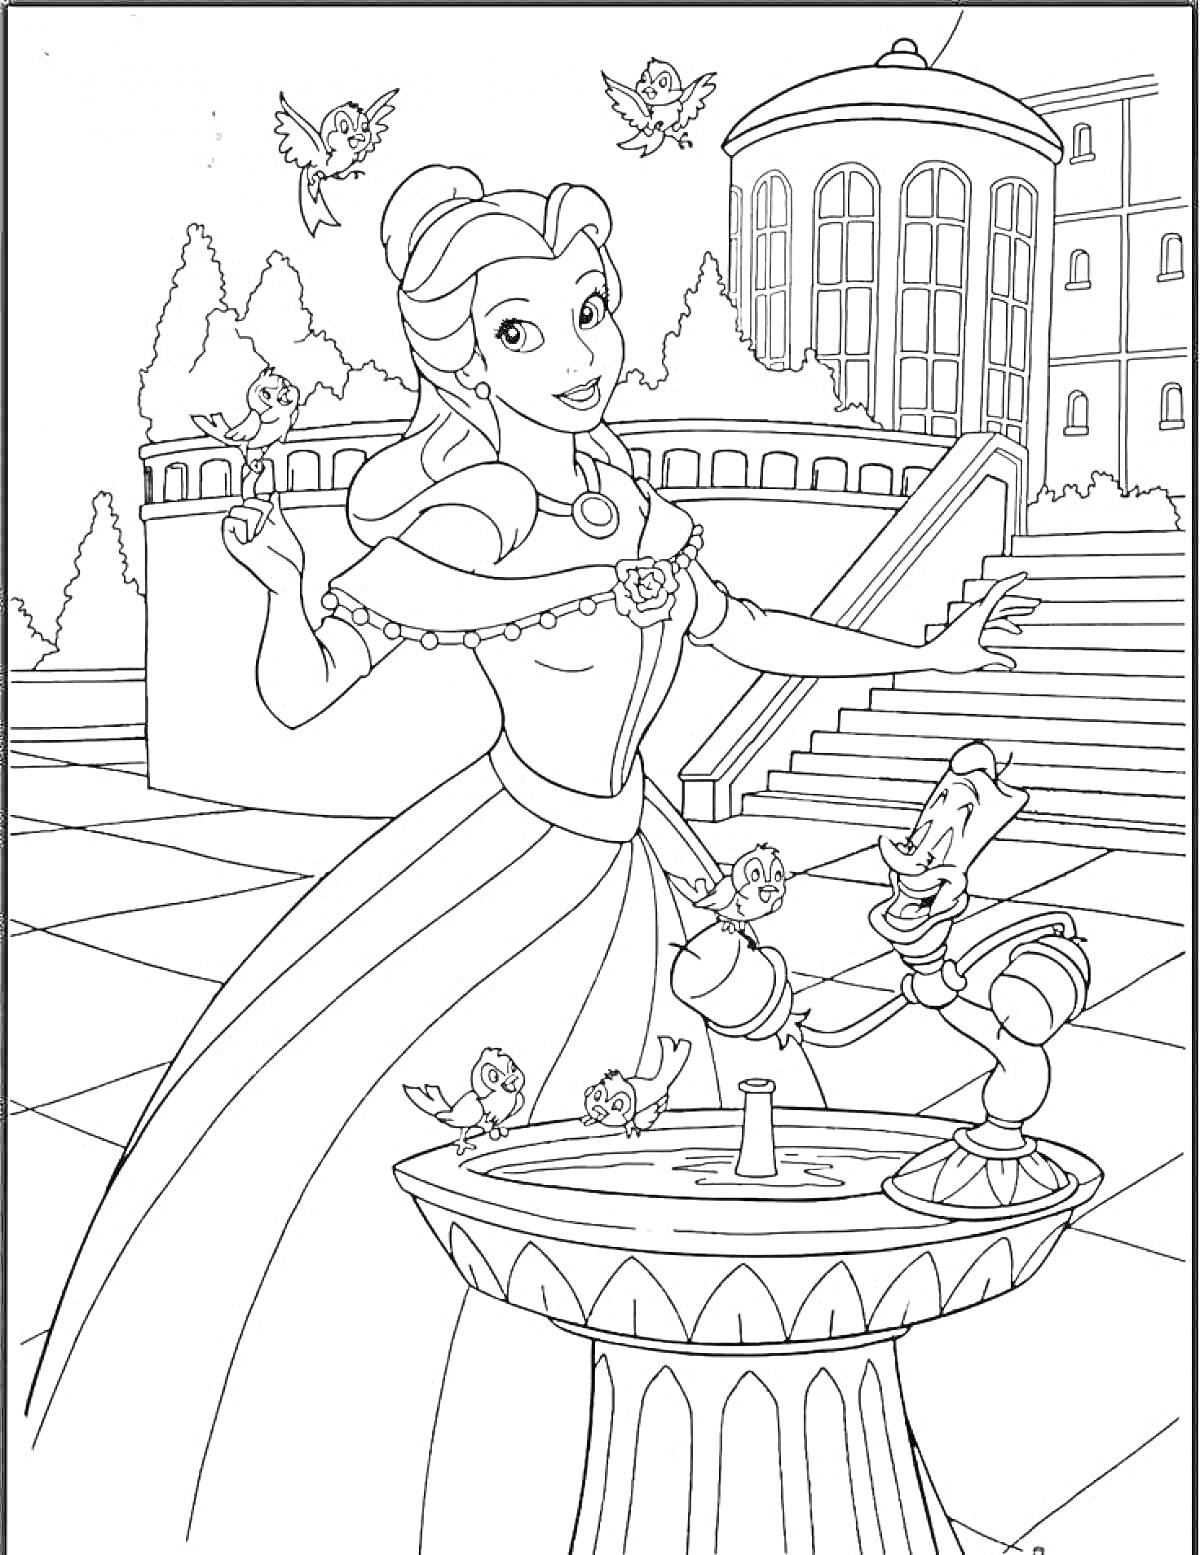 Принцесса на фоне дворца, птиц и фонтанчика с ожившим канделябром